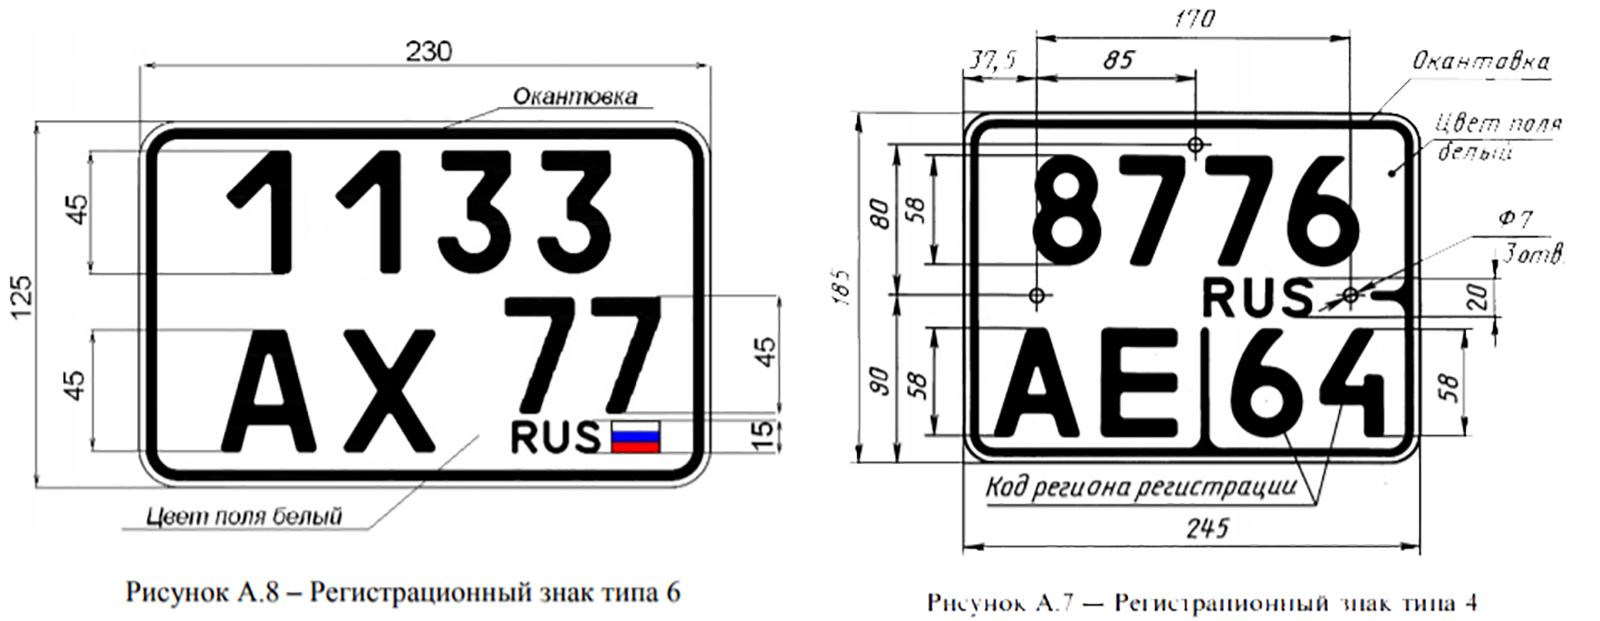 Номера четыре нуля. Размеры номерного знака мотоцикла. Гос номерной знак автомобиля размер. Габариты номерного знака автомобиля в России. Размер номерного знака на скутер.